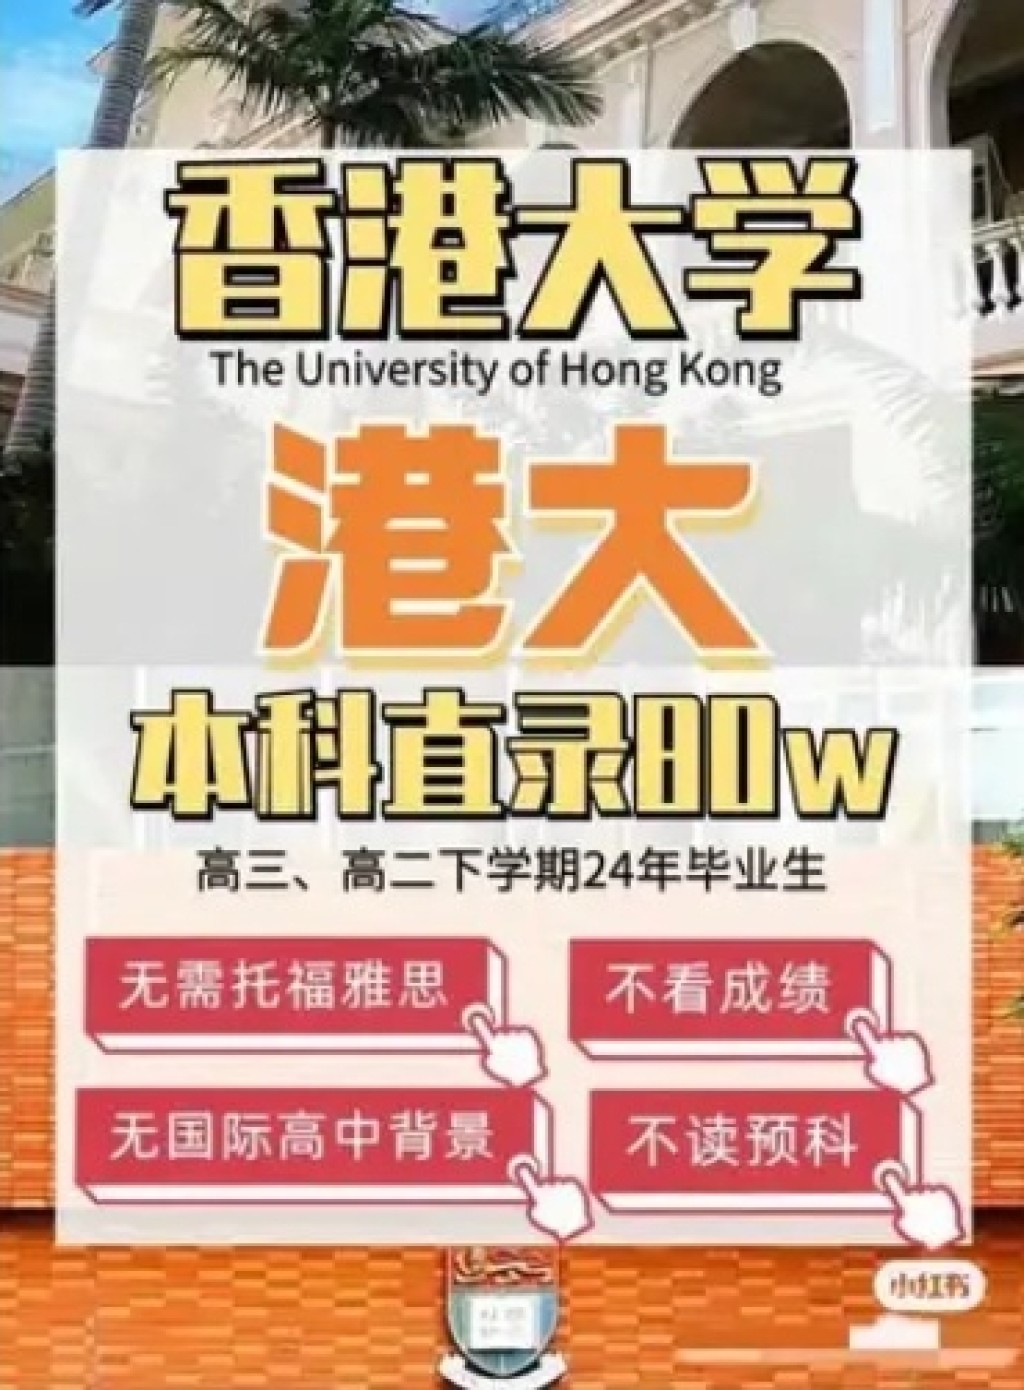 甚至有本科直录香港大学，「无需托福雅思成绩、无需国际高中背景、无需读预科，申请费高达80万元」。